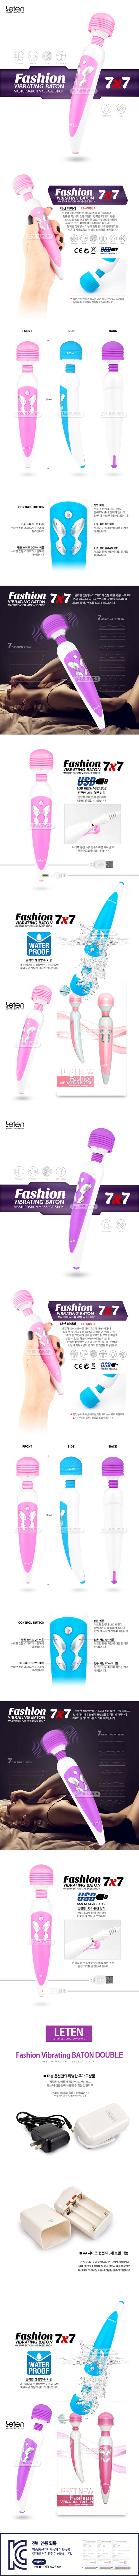 [멀티 스피드] 패션 바이브레이팅 버탄(Leten Fashion Vibrating Baton) - 레텐